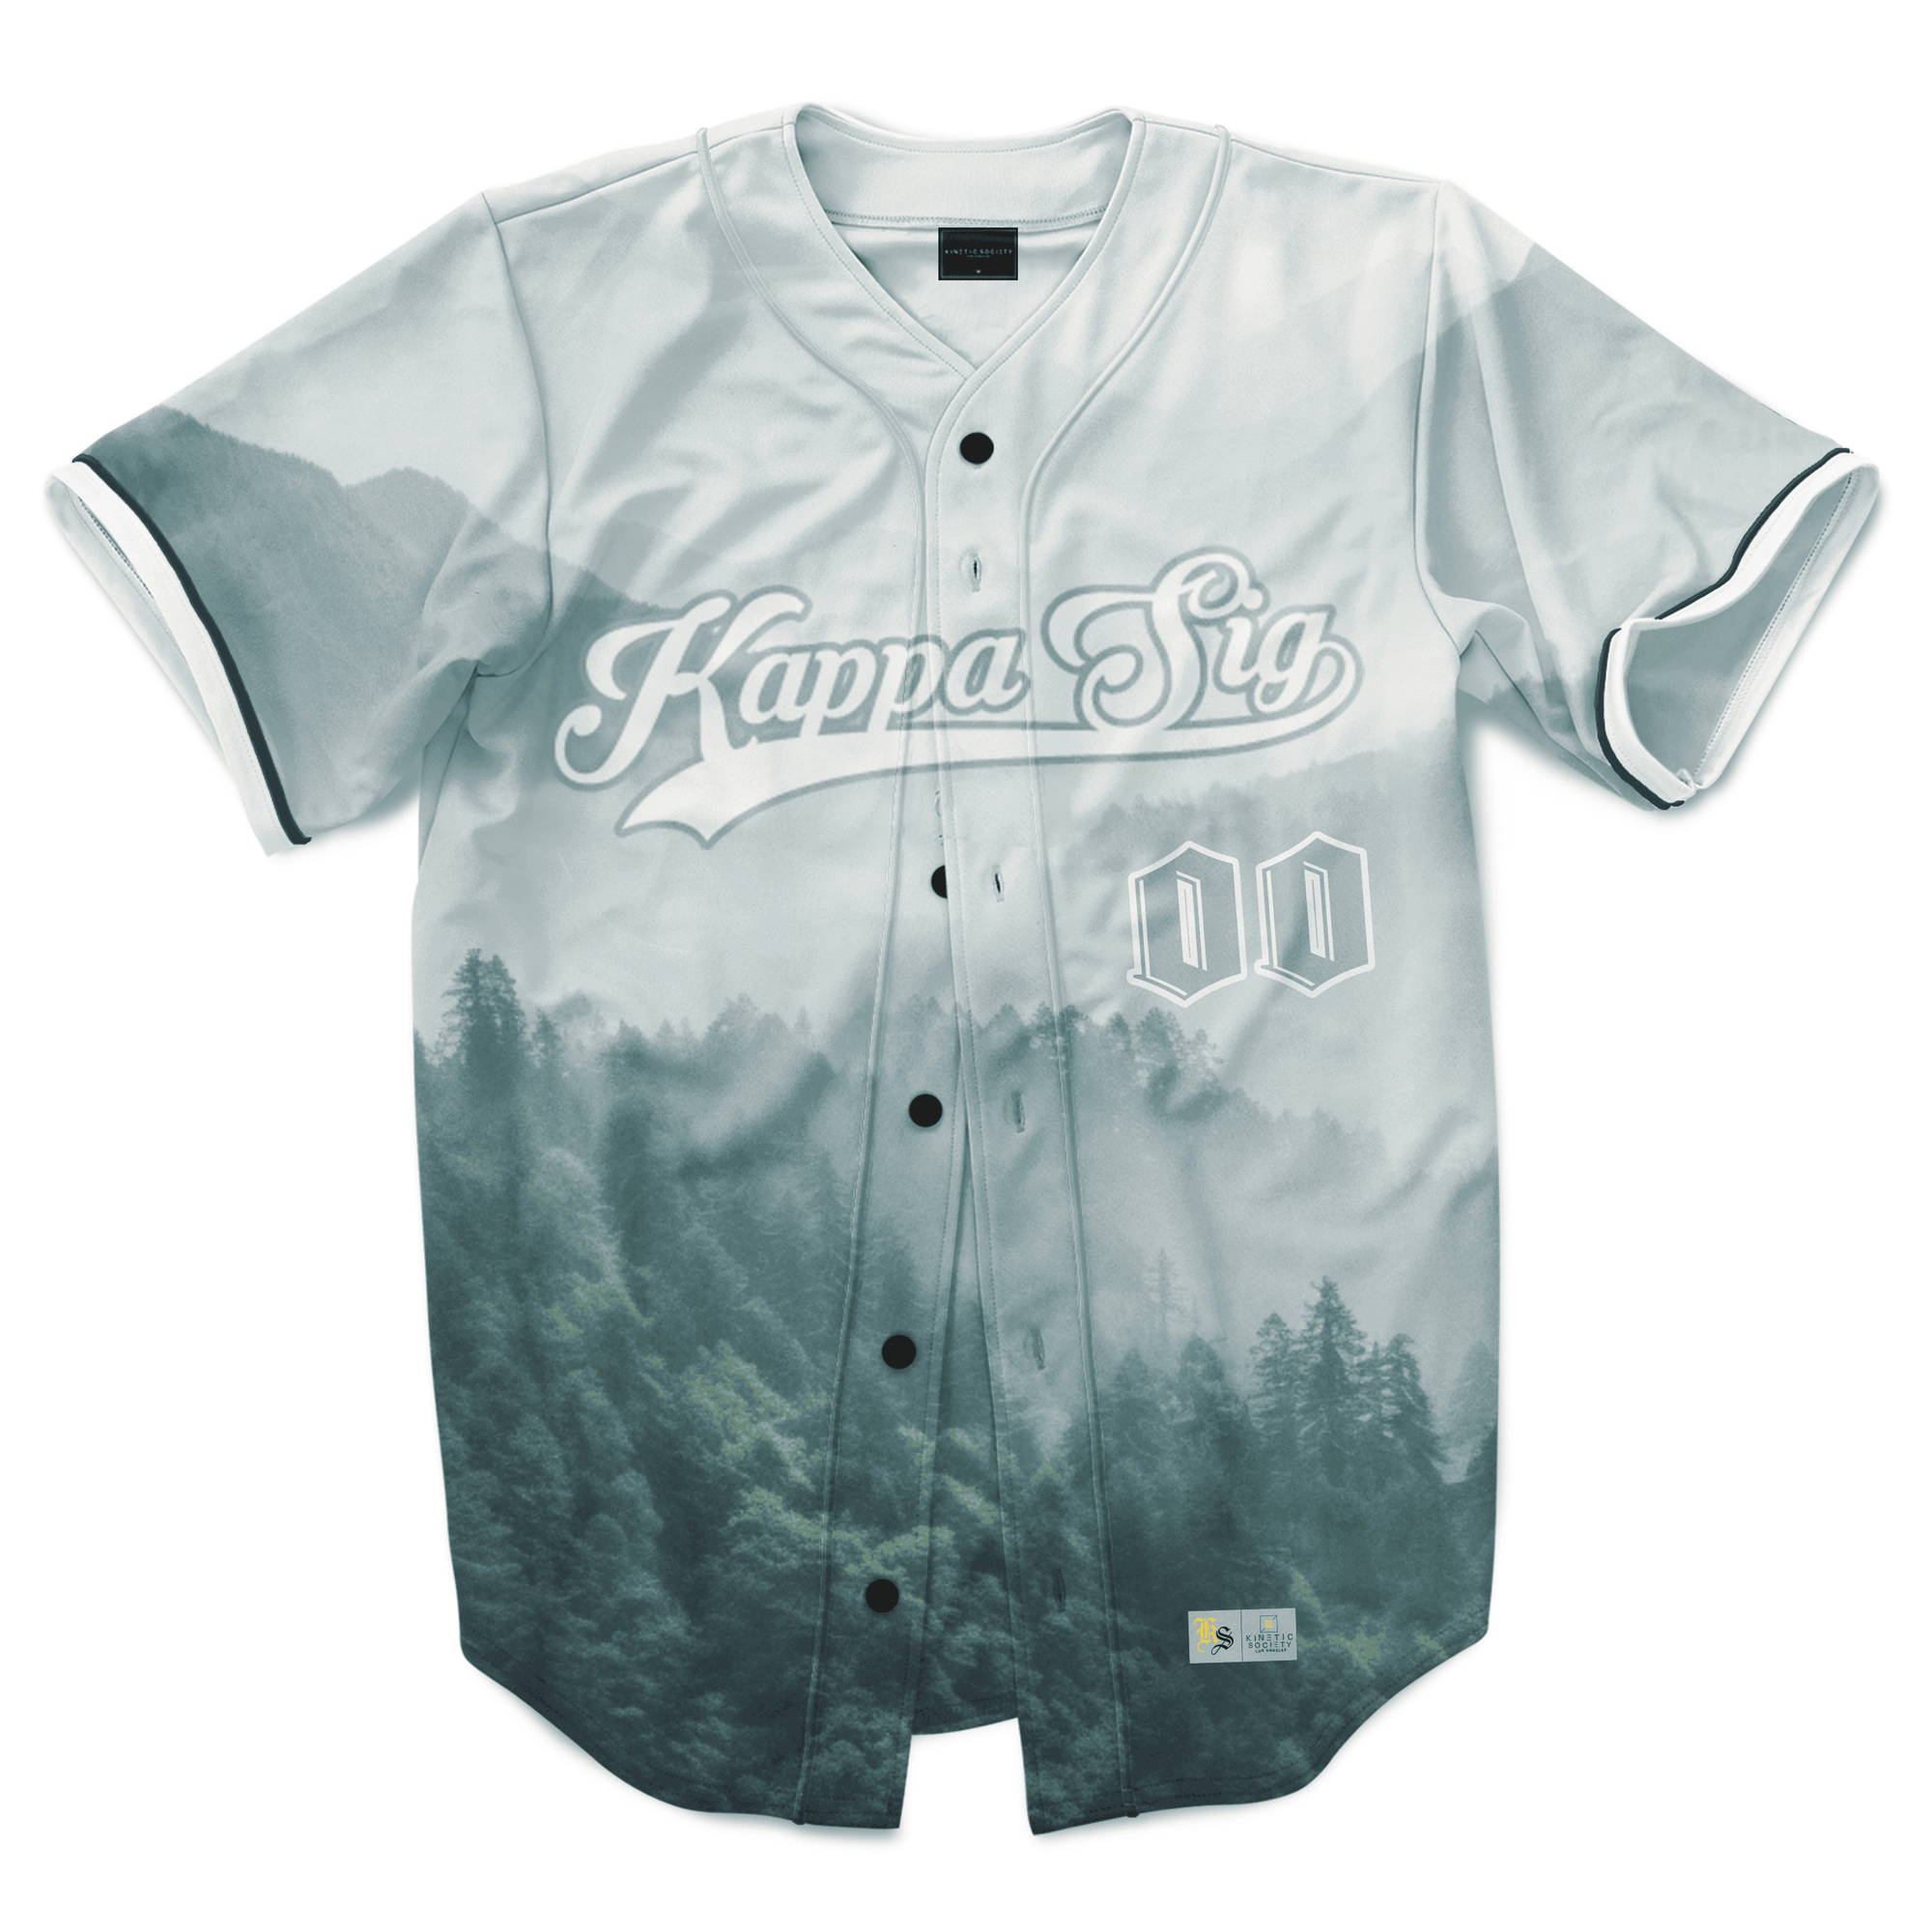 Kappa Sigma - Forest Baseball Jersey